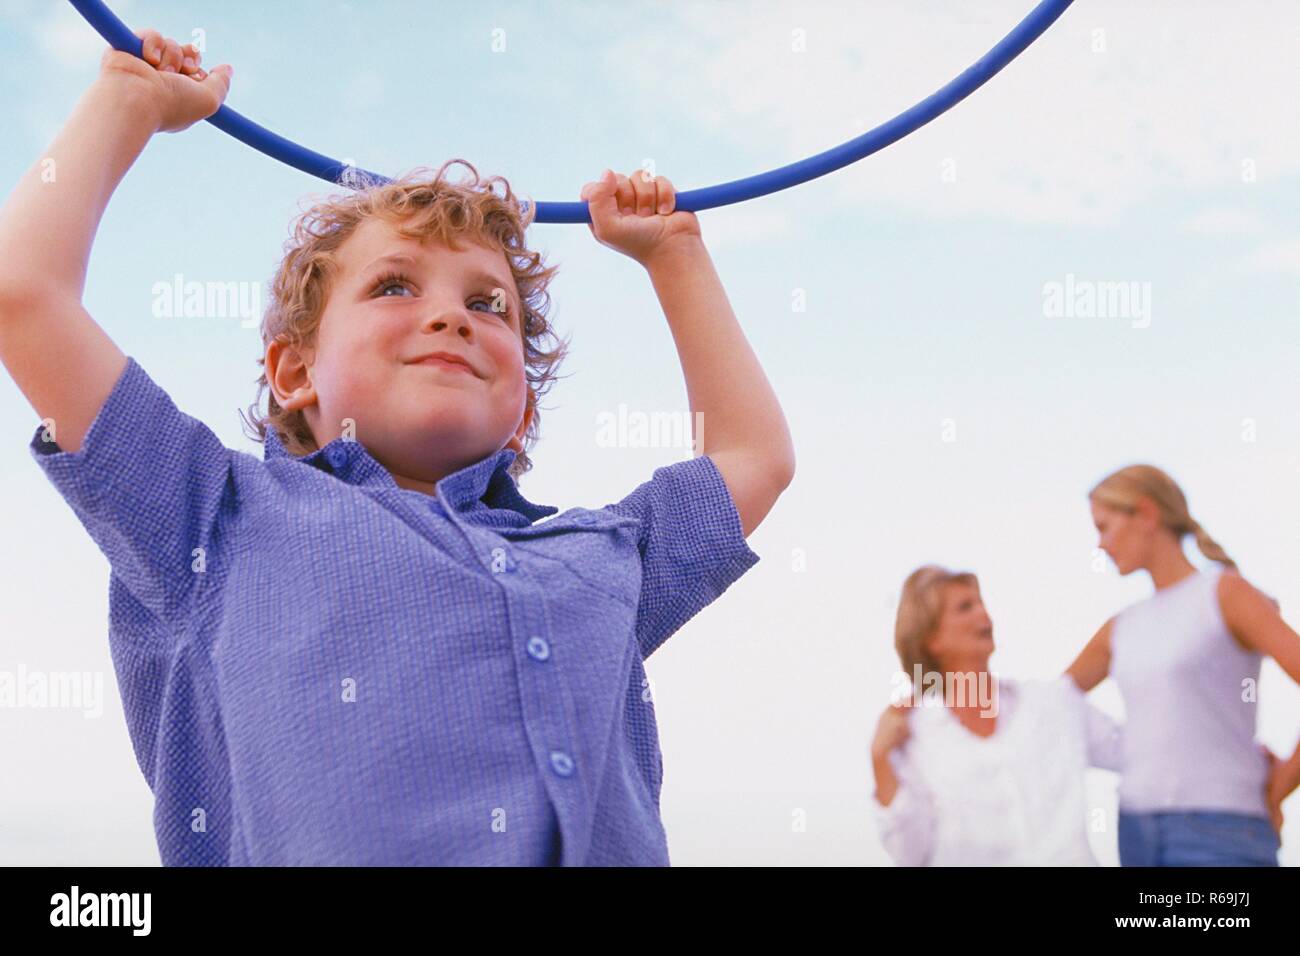 Strandszene, Ritratto, Halbfigur, Junge, 5 Jahre, bekleidet mit blau-weiss kariertem Hemd, spielt Mit einem blauen Gymnastik Reifen am Strand Foto Stock